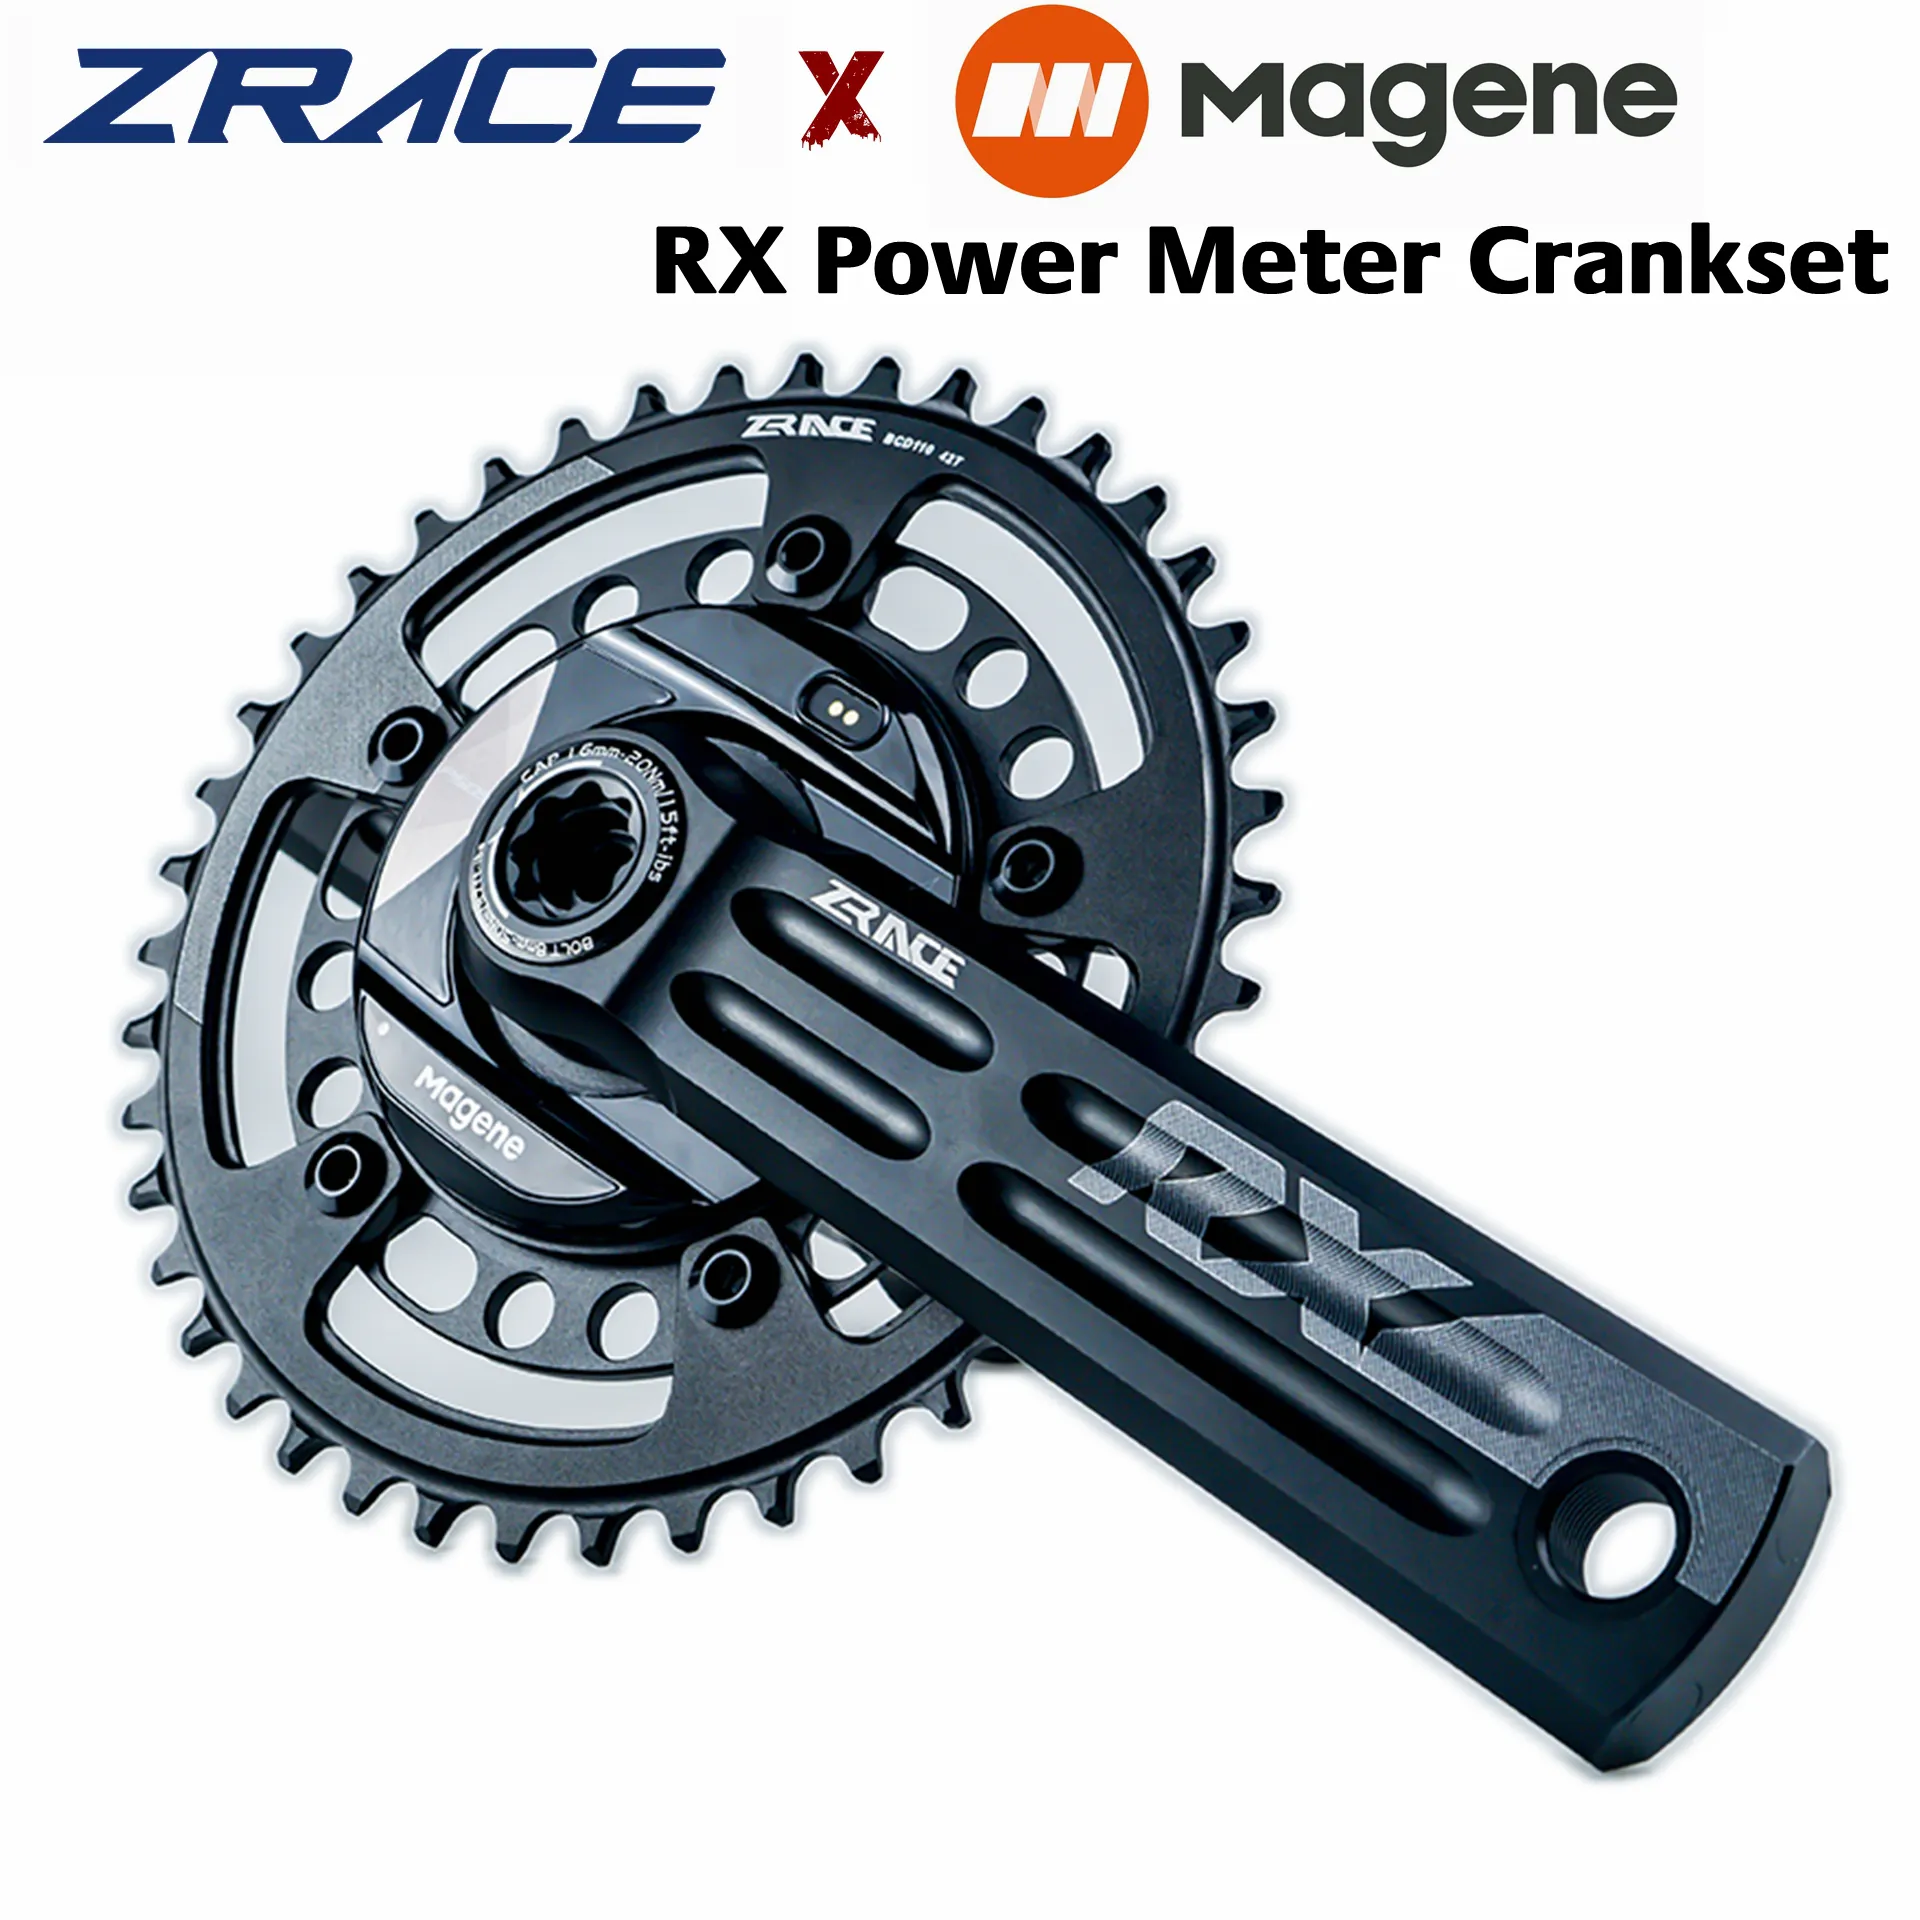 Zrace x Magene RX Power Meter Crankset 2 x 10/11/12スピードチェーンセット、ダブボトムブラケット、パワークランク、P505パワーメータースパイダー